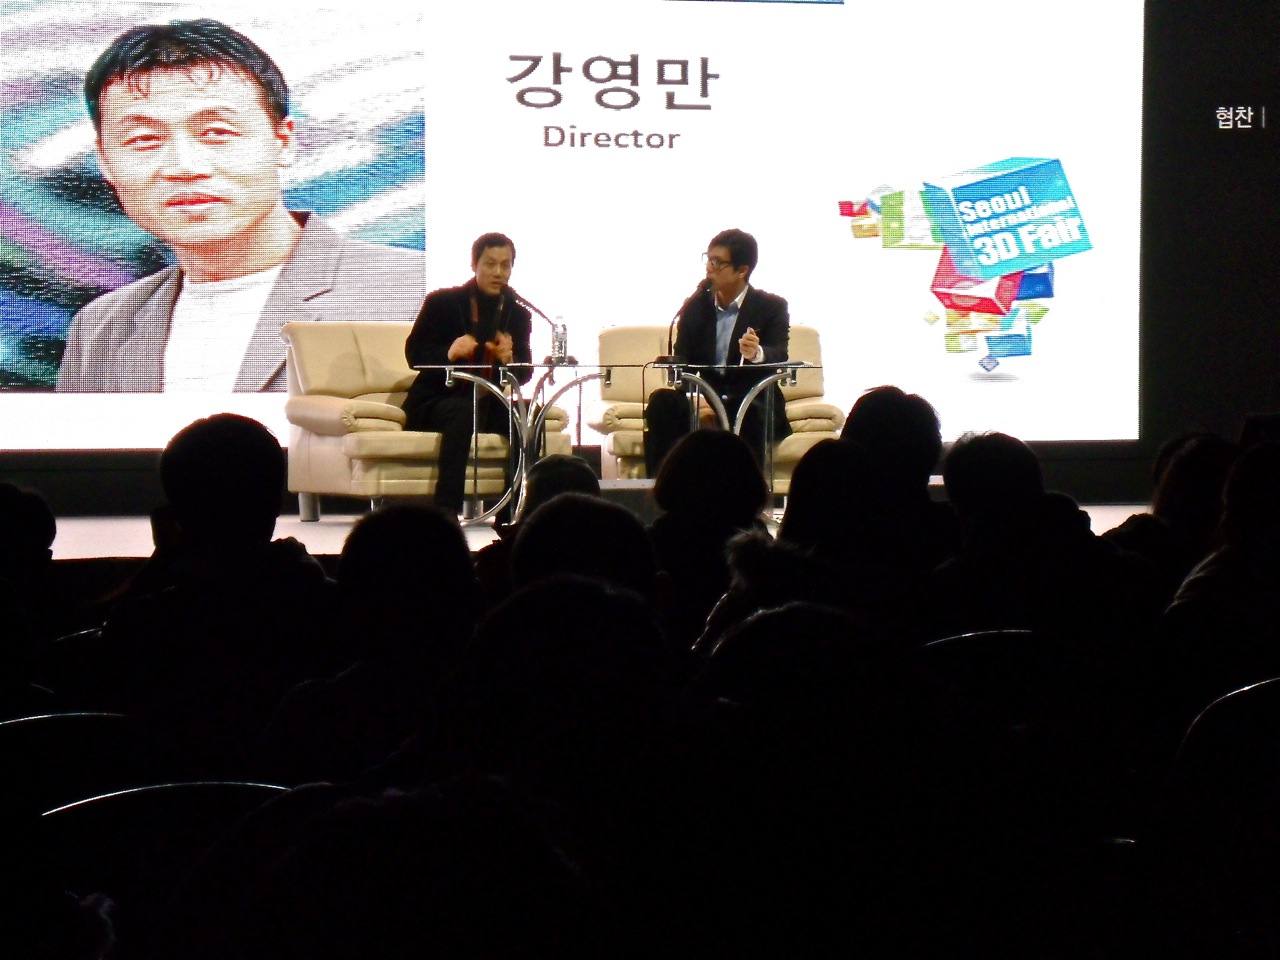 Seoul International 3D Fair - Young Man Kang